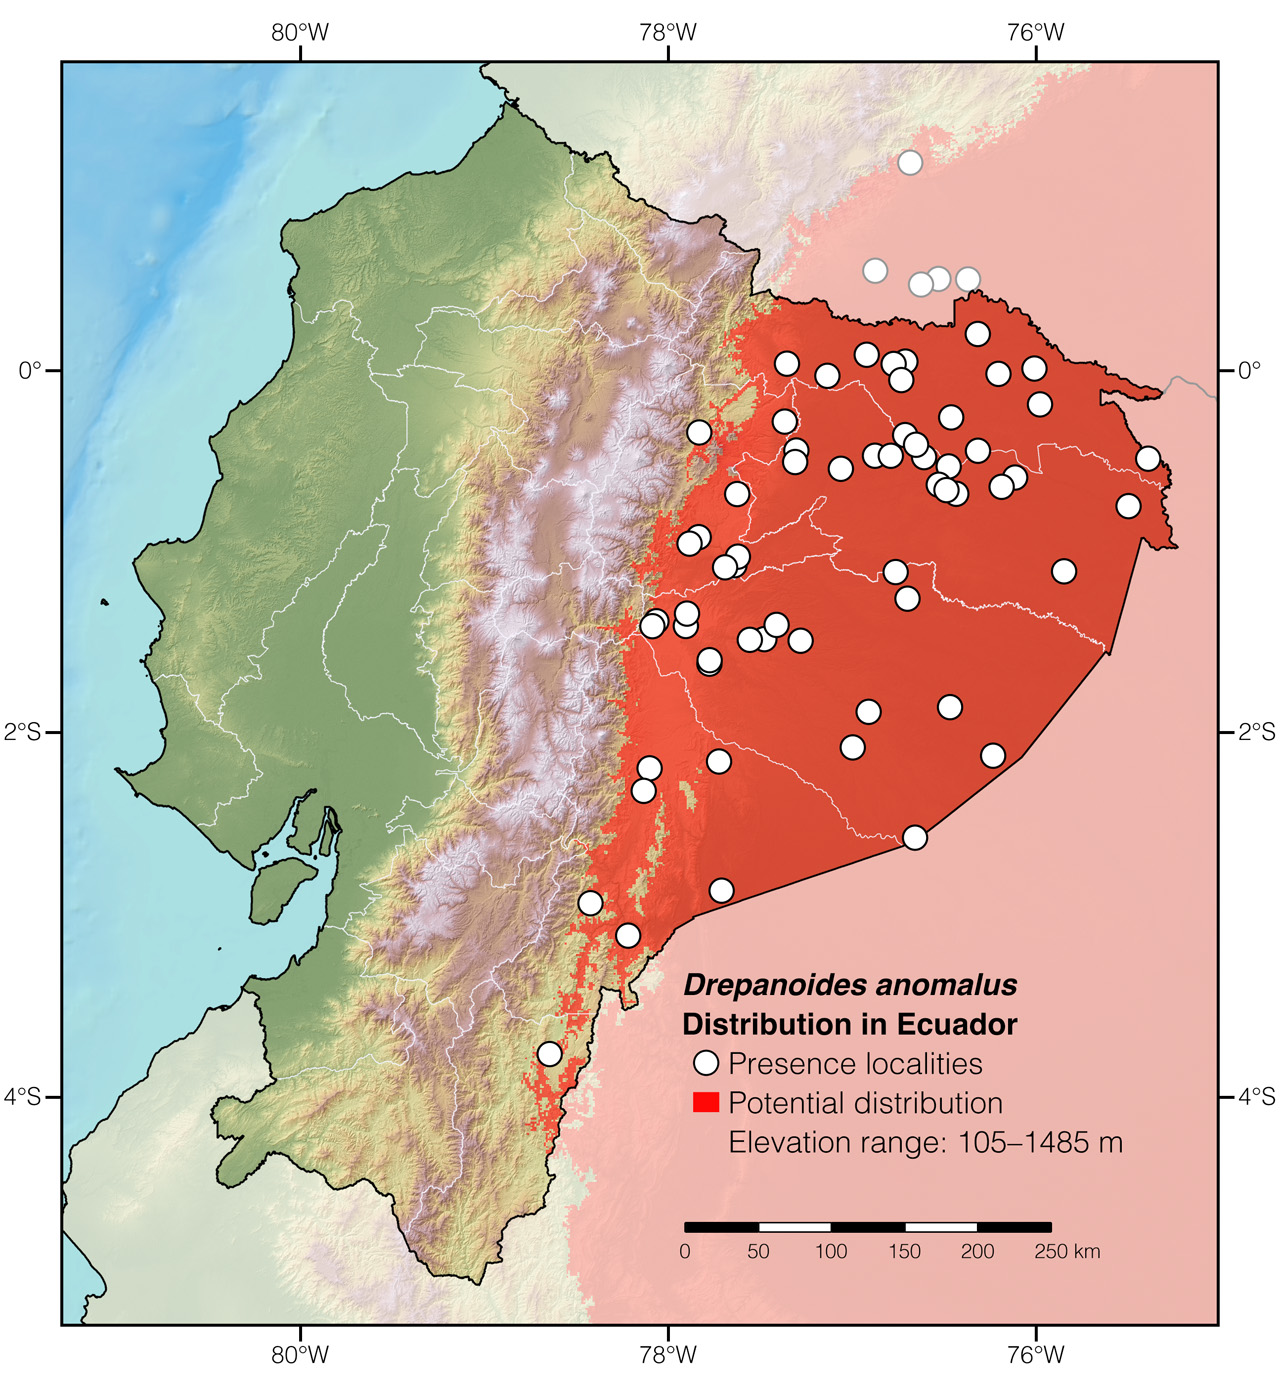 Distribution of Drepanoides anomalus in Ecuador